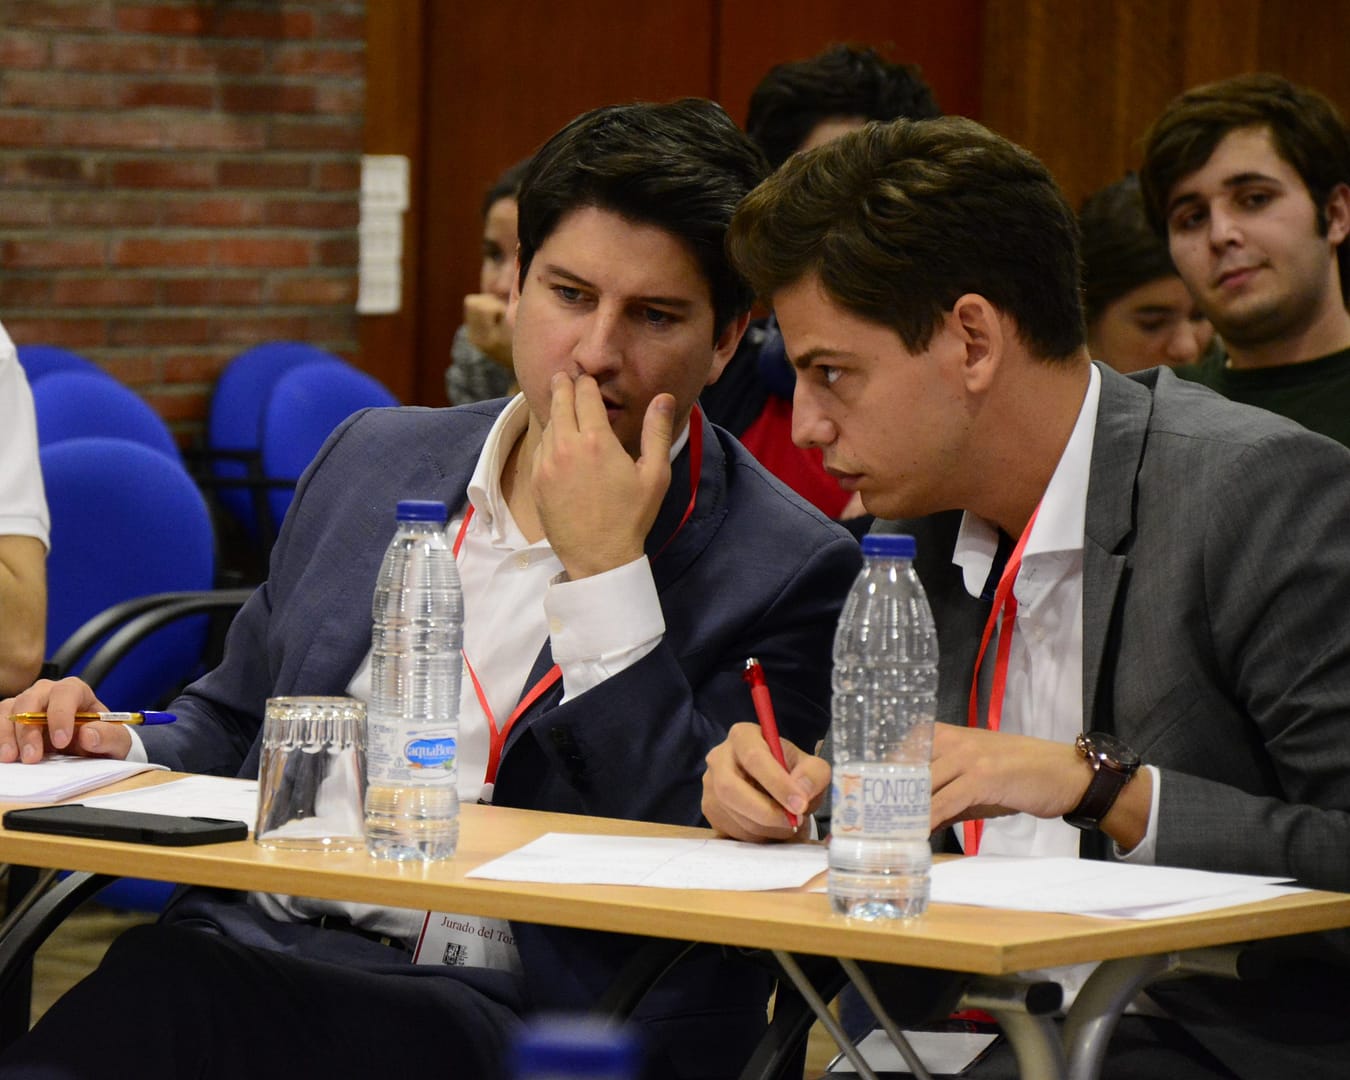 Colegiales del CM Alcalá en el III Torneo de Debate Universitario "Adolfo Suárez"